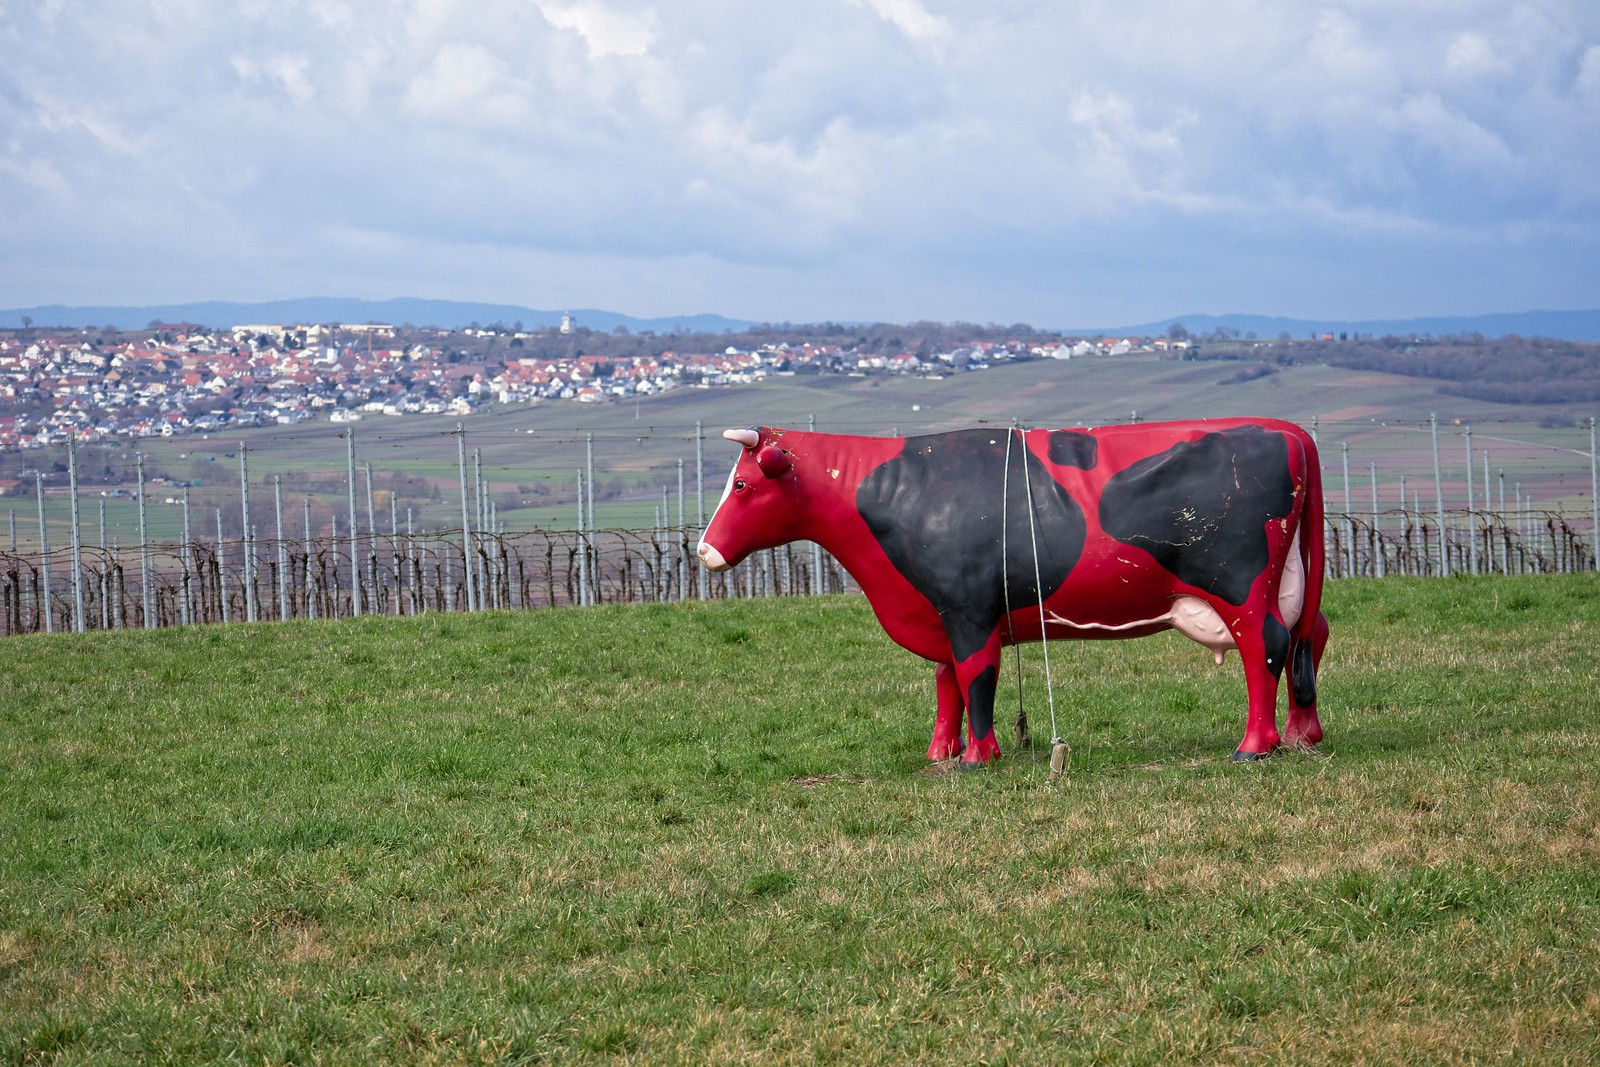 Kuh auf der Wiese bei Nieder-Olm (Canon EOS M50, EF-M 55-200mm f/4.5-6.3 IS STM, 88 mm, Manuell, 1/400 sek @ f/6,3, ISO 100)